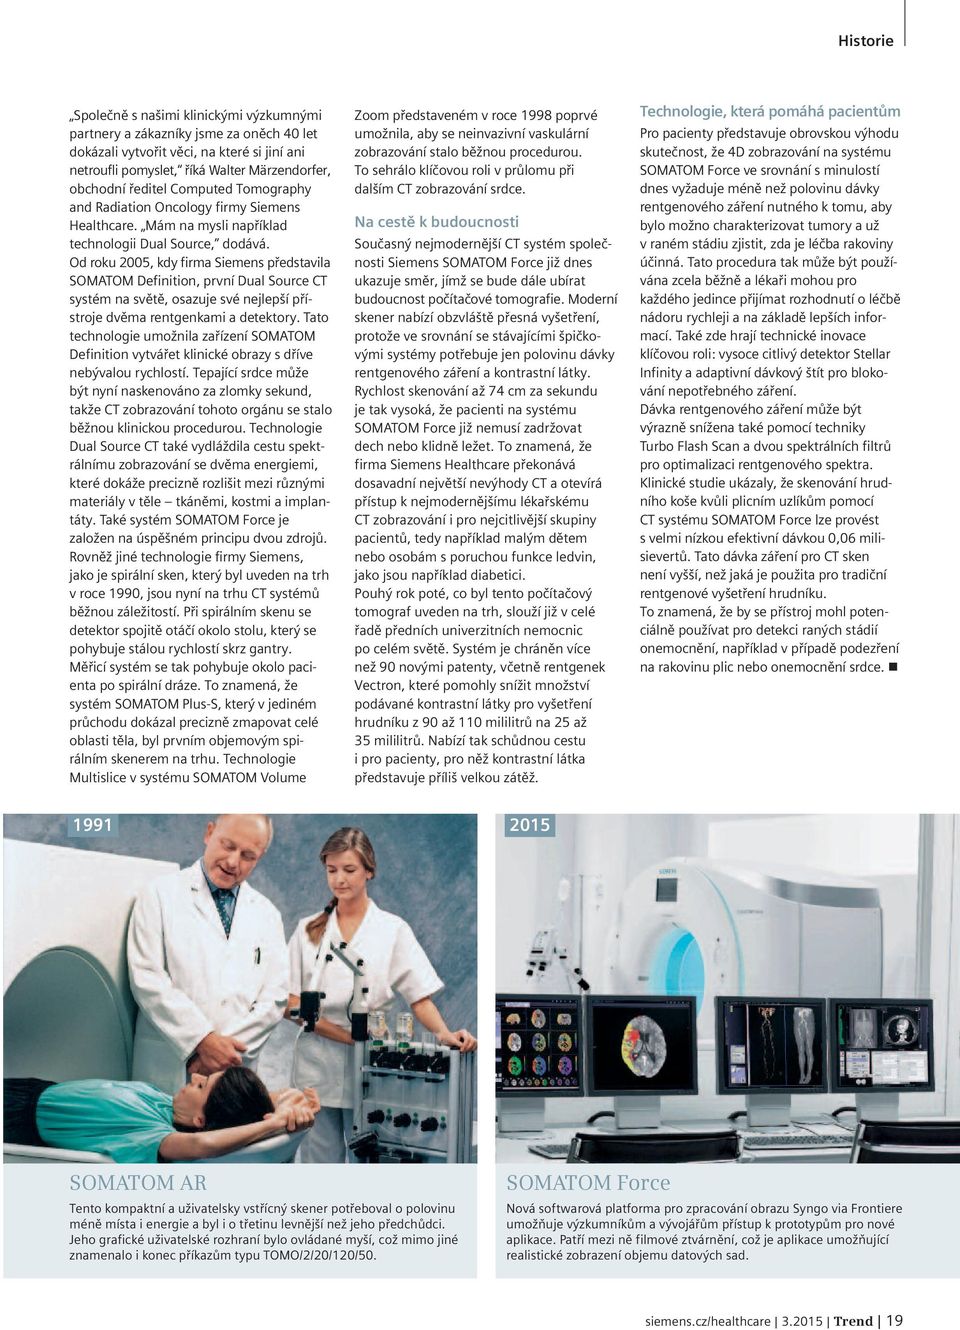 Od roku 2005, kdy firma Siemens představila SOMATOM Definition, první Dual Source CT systém na světě, osazuje své nejlepší přístroje dvěma rentgenkami a detektory.